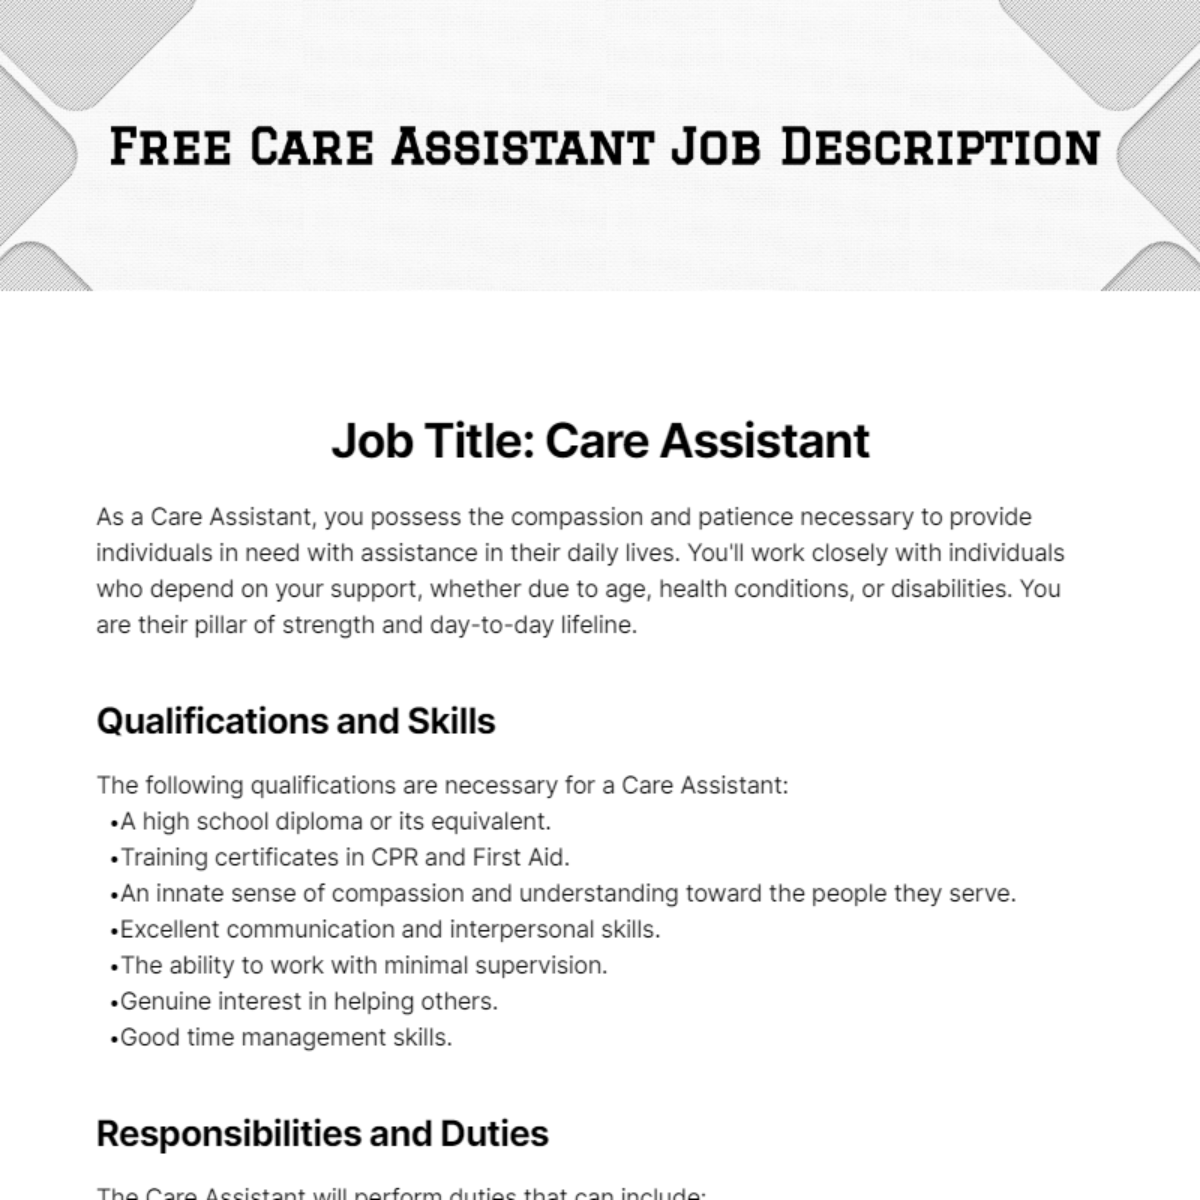 Free Care Assistant Job Description Template